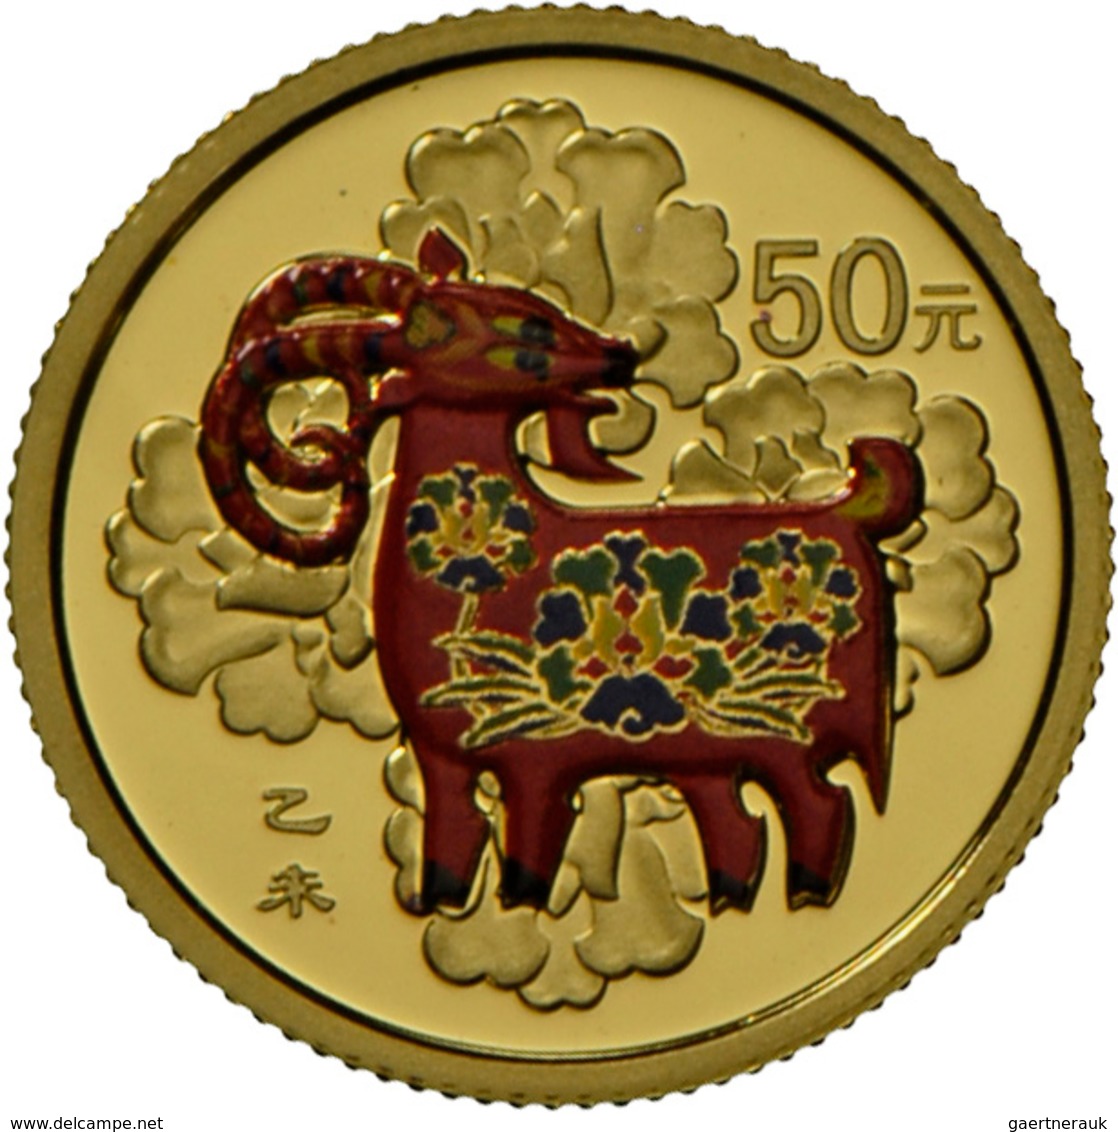 China - Volksrepublik: Set 2 Münzen 2015 Jahr Der Ziege: 10 Yuan 1 OZ Silber + 50 Yuan 1/10 OZ Gold - China